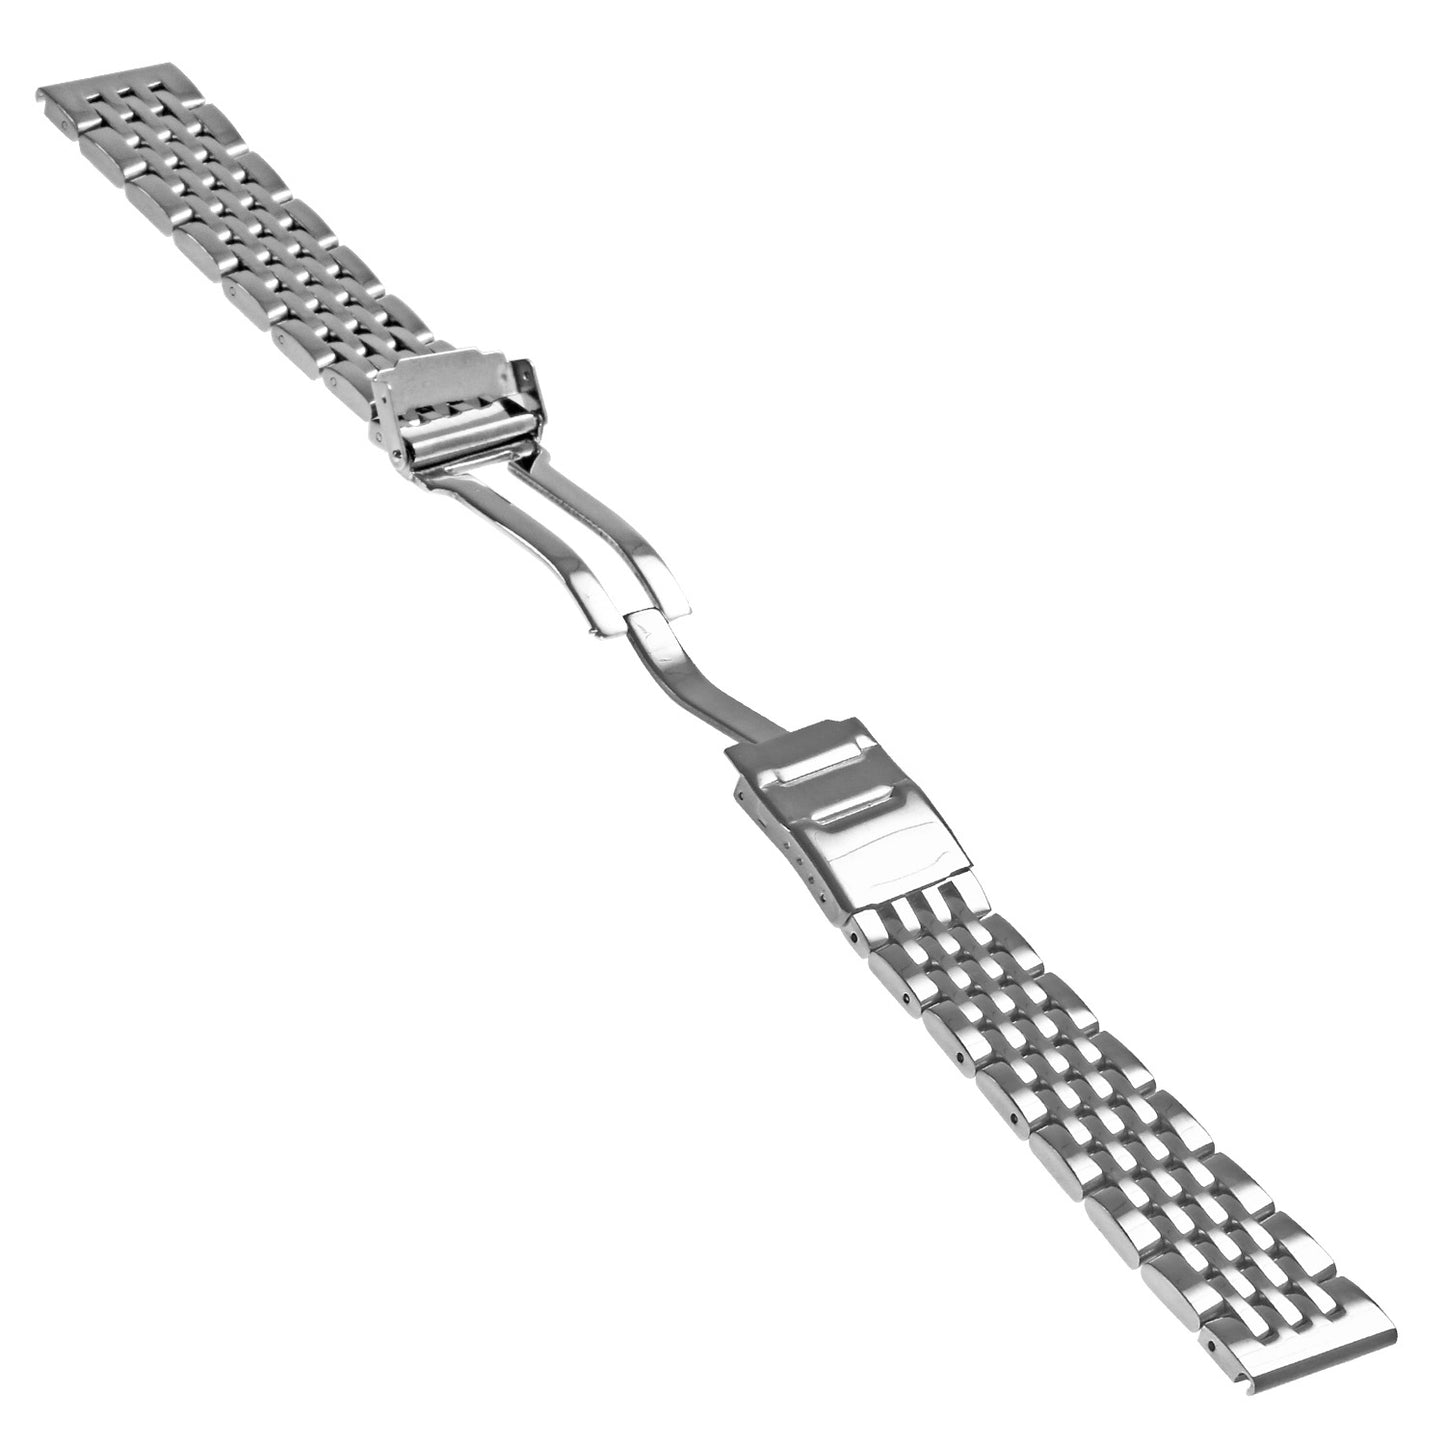 Bracelet for Breitling Navitimer